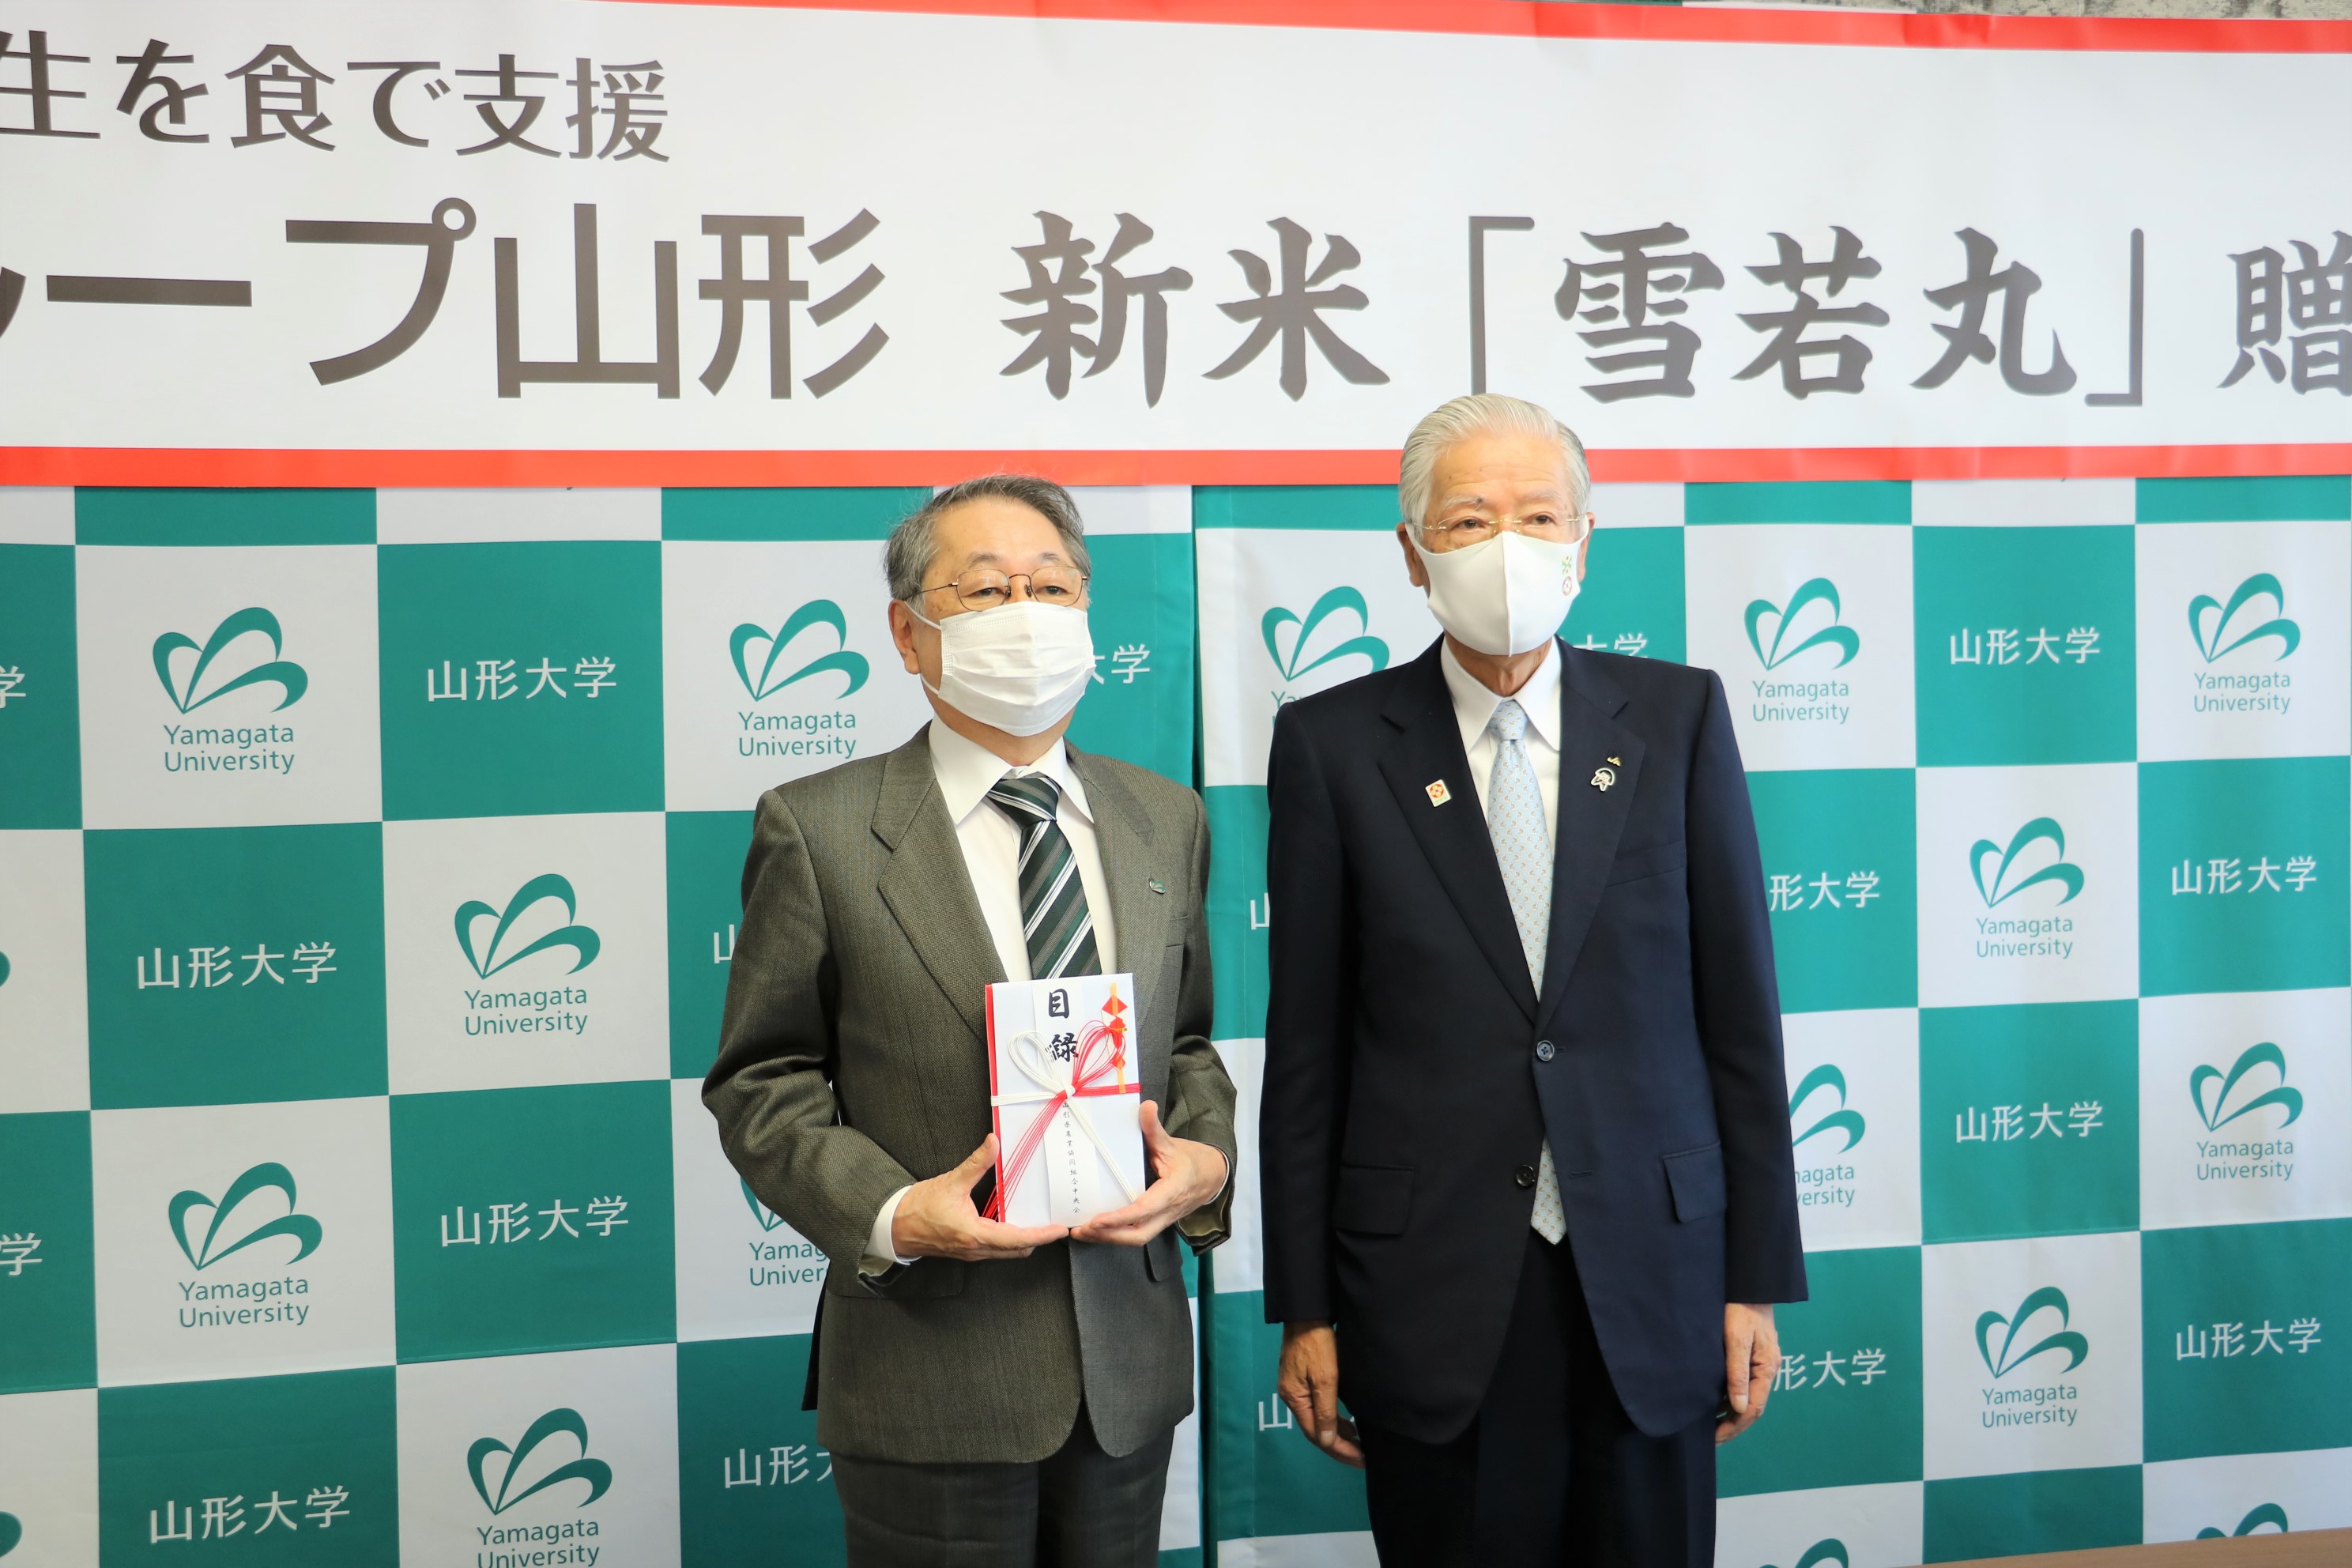 目録を手にする玉手学長と長澤代表理事会長の画像